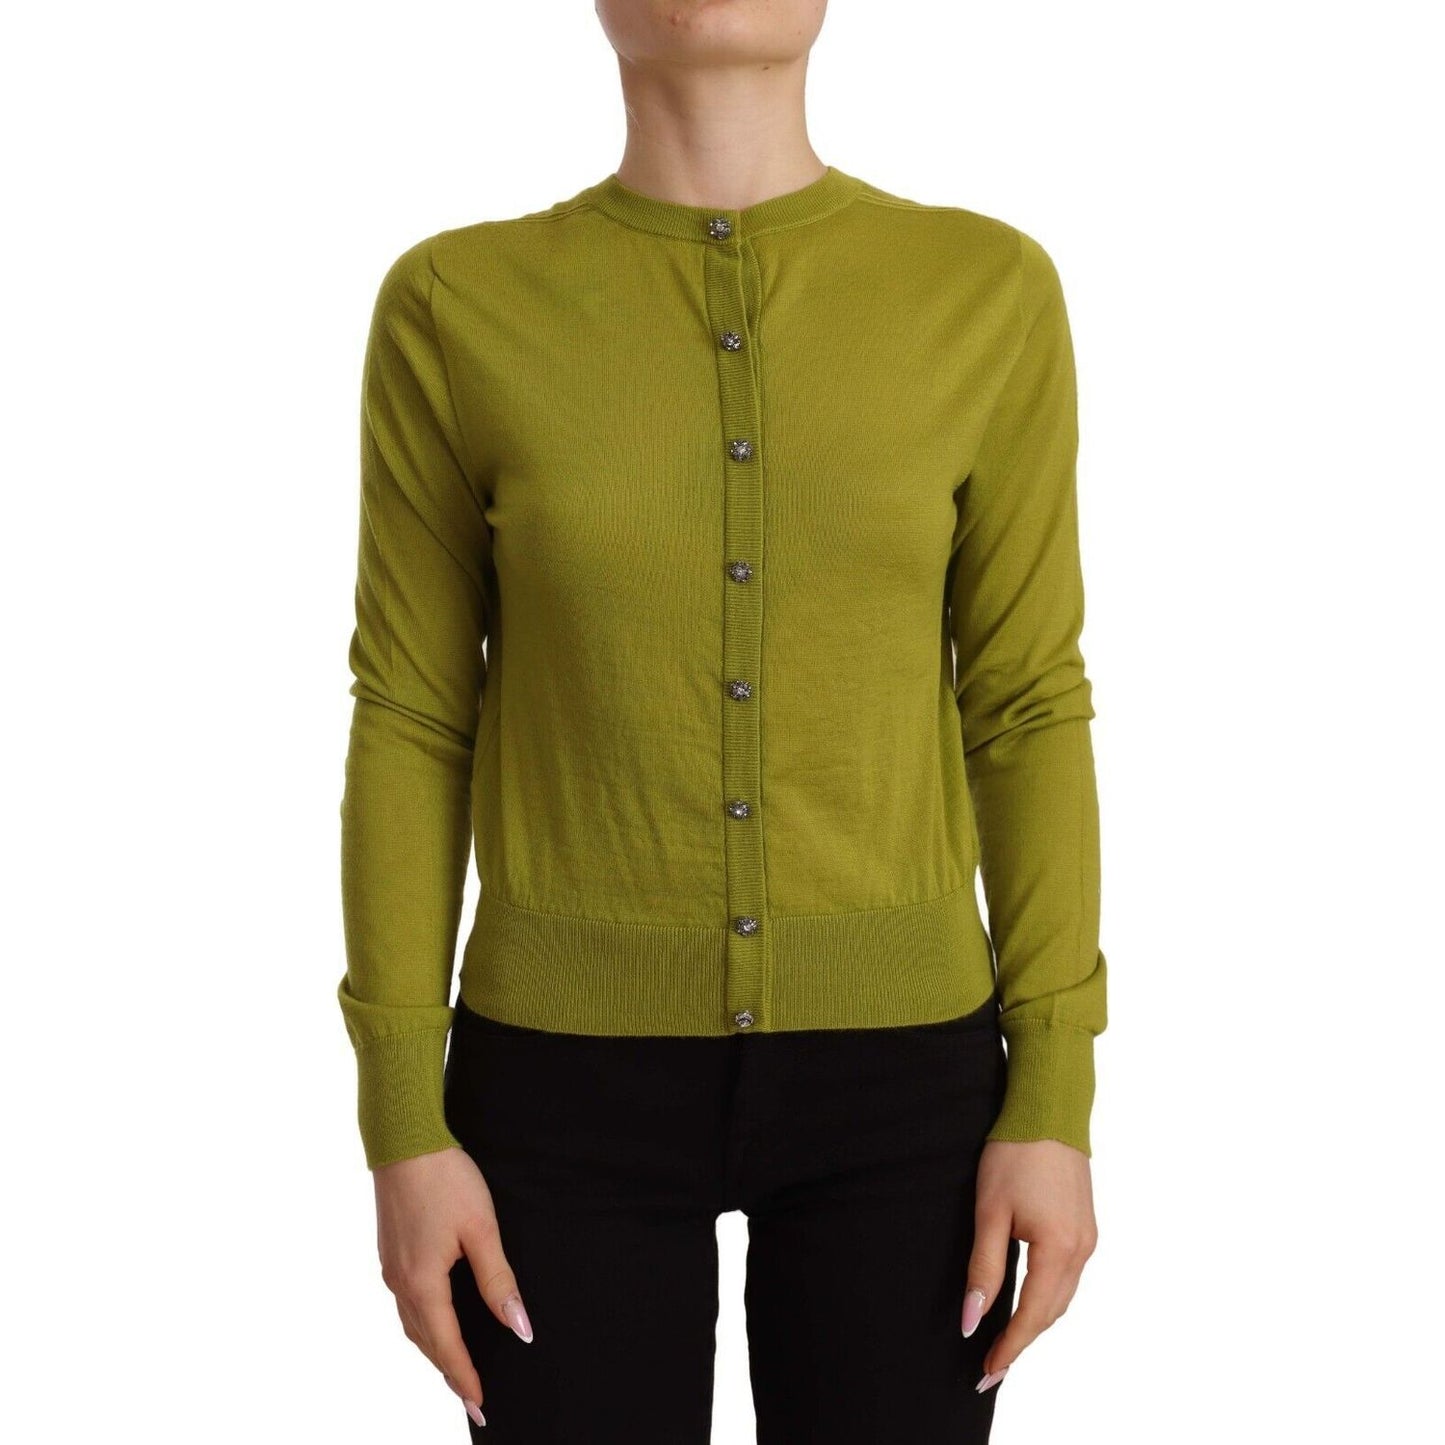 Dolce & Gabbana Apple Green Cashmere Cardigan - Luxe Comfort apple-green-cashmere-buttons-cardigan-sweater s-l1600-61-da7f5f00-e78.jpg